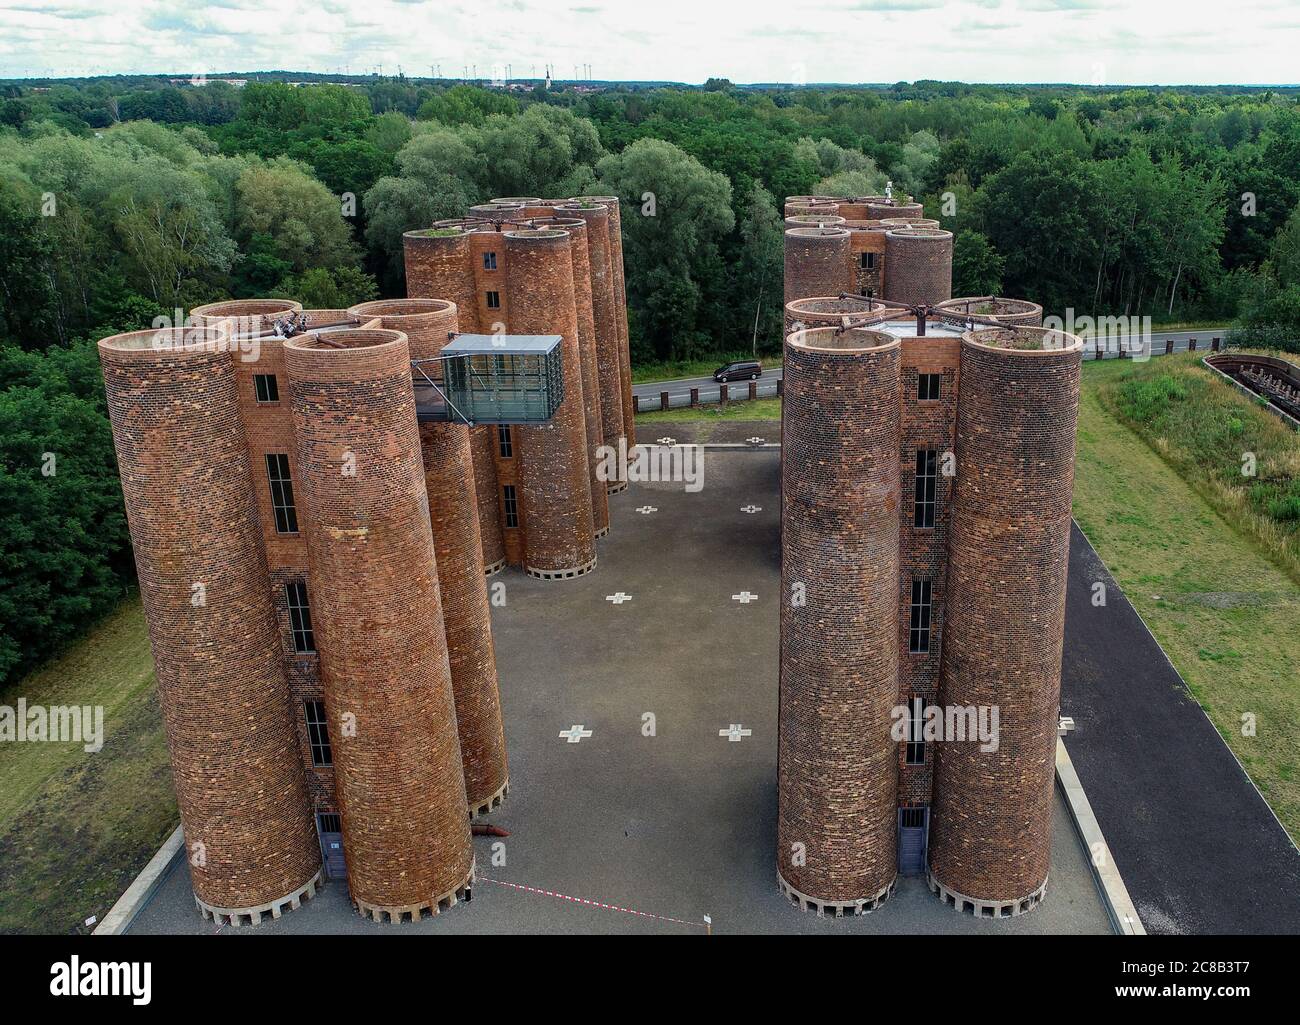 21 juillet 2020, Brandebourg, Lauchhammer: Le monument industriel  'Biotowers Lauchhammer' (photo aérienne avec un drone). Les 24 tours, d'une  hauteur de 22 mètres, appartenaient à l'ancienne usine de cokéfaction de  lignite située